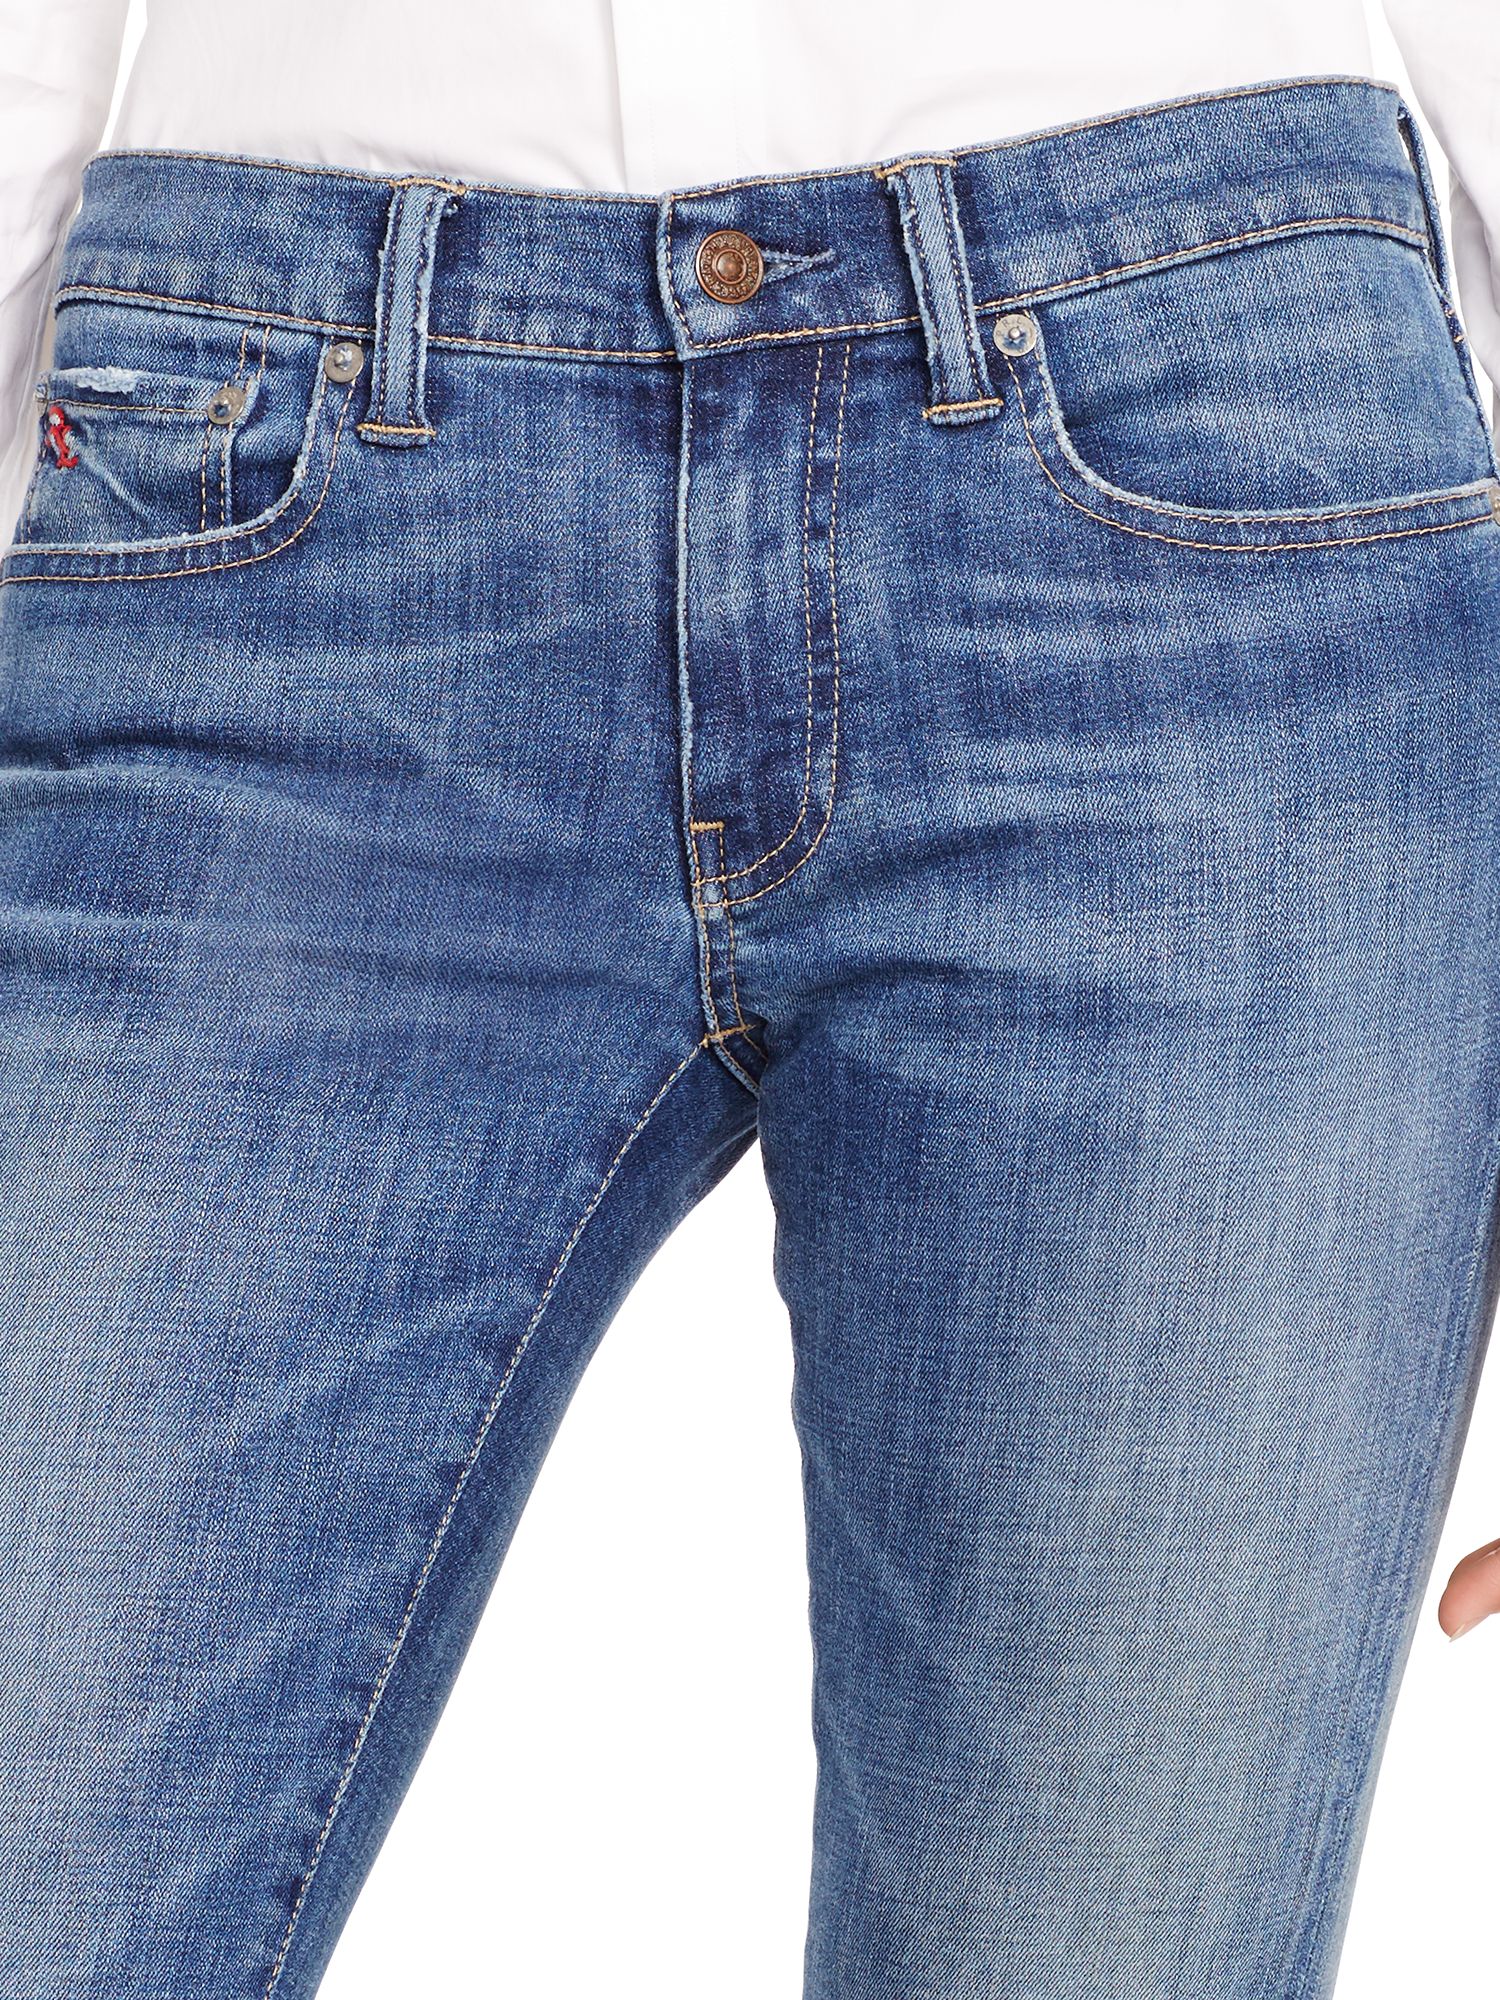 polo tompkins skinny jeans